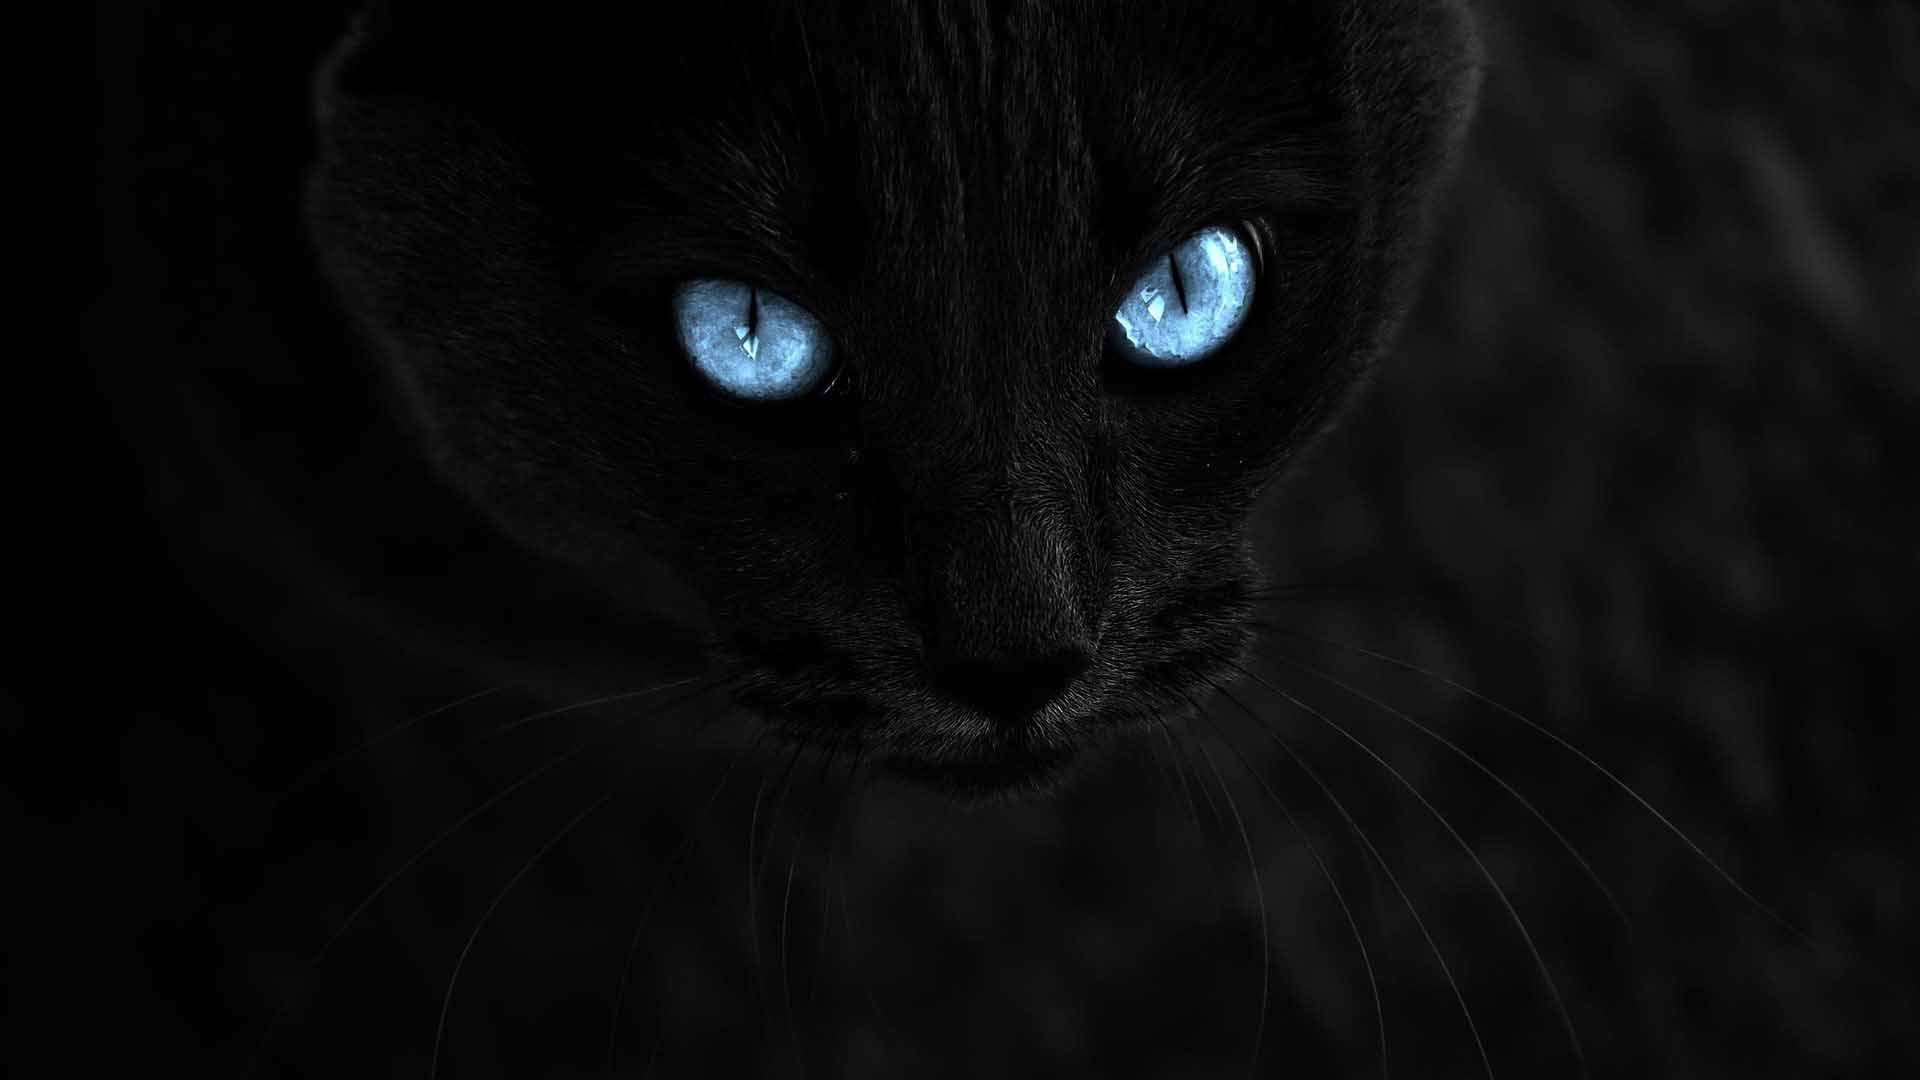 Черные Кошки Фото Красивые